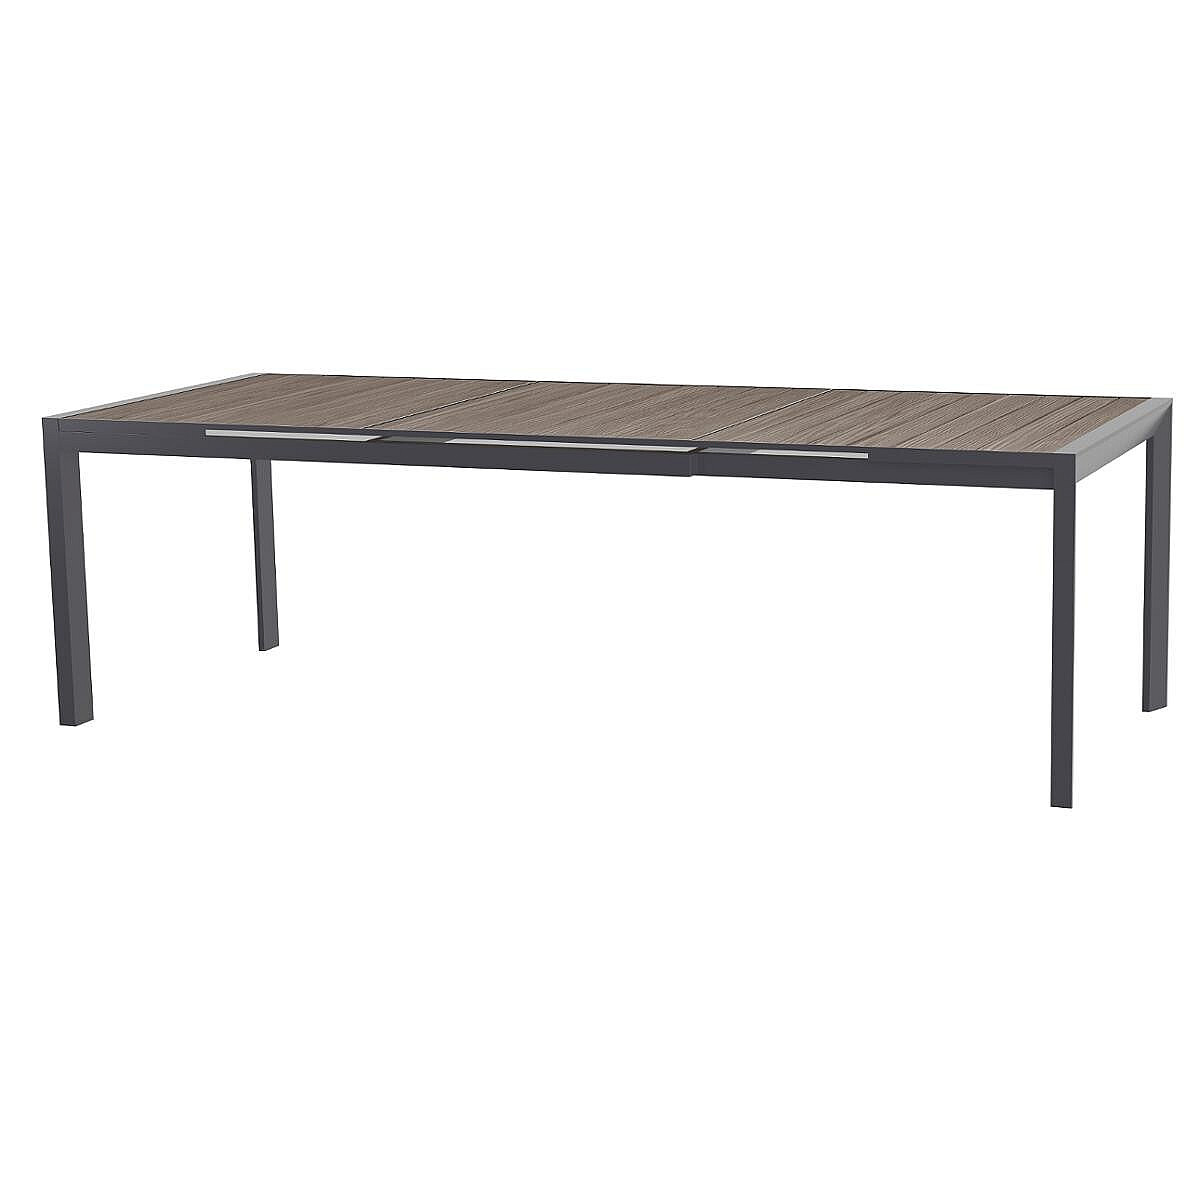 DEOKORK Hliníkový stůl LIVORNO 214/274x110 cm (antracit)